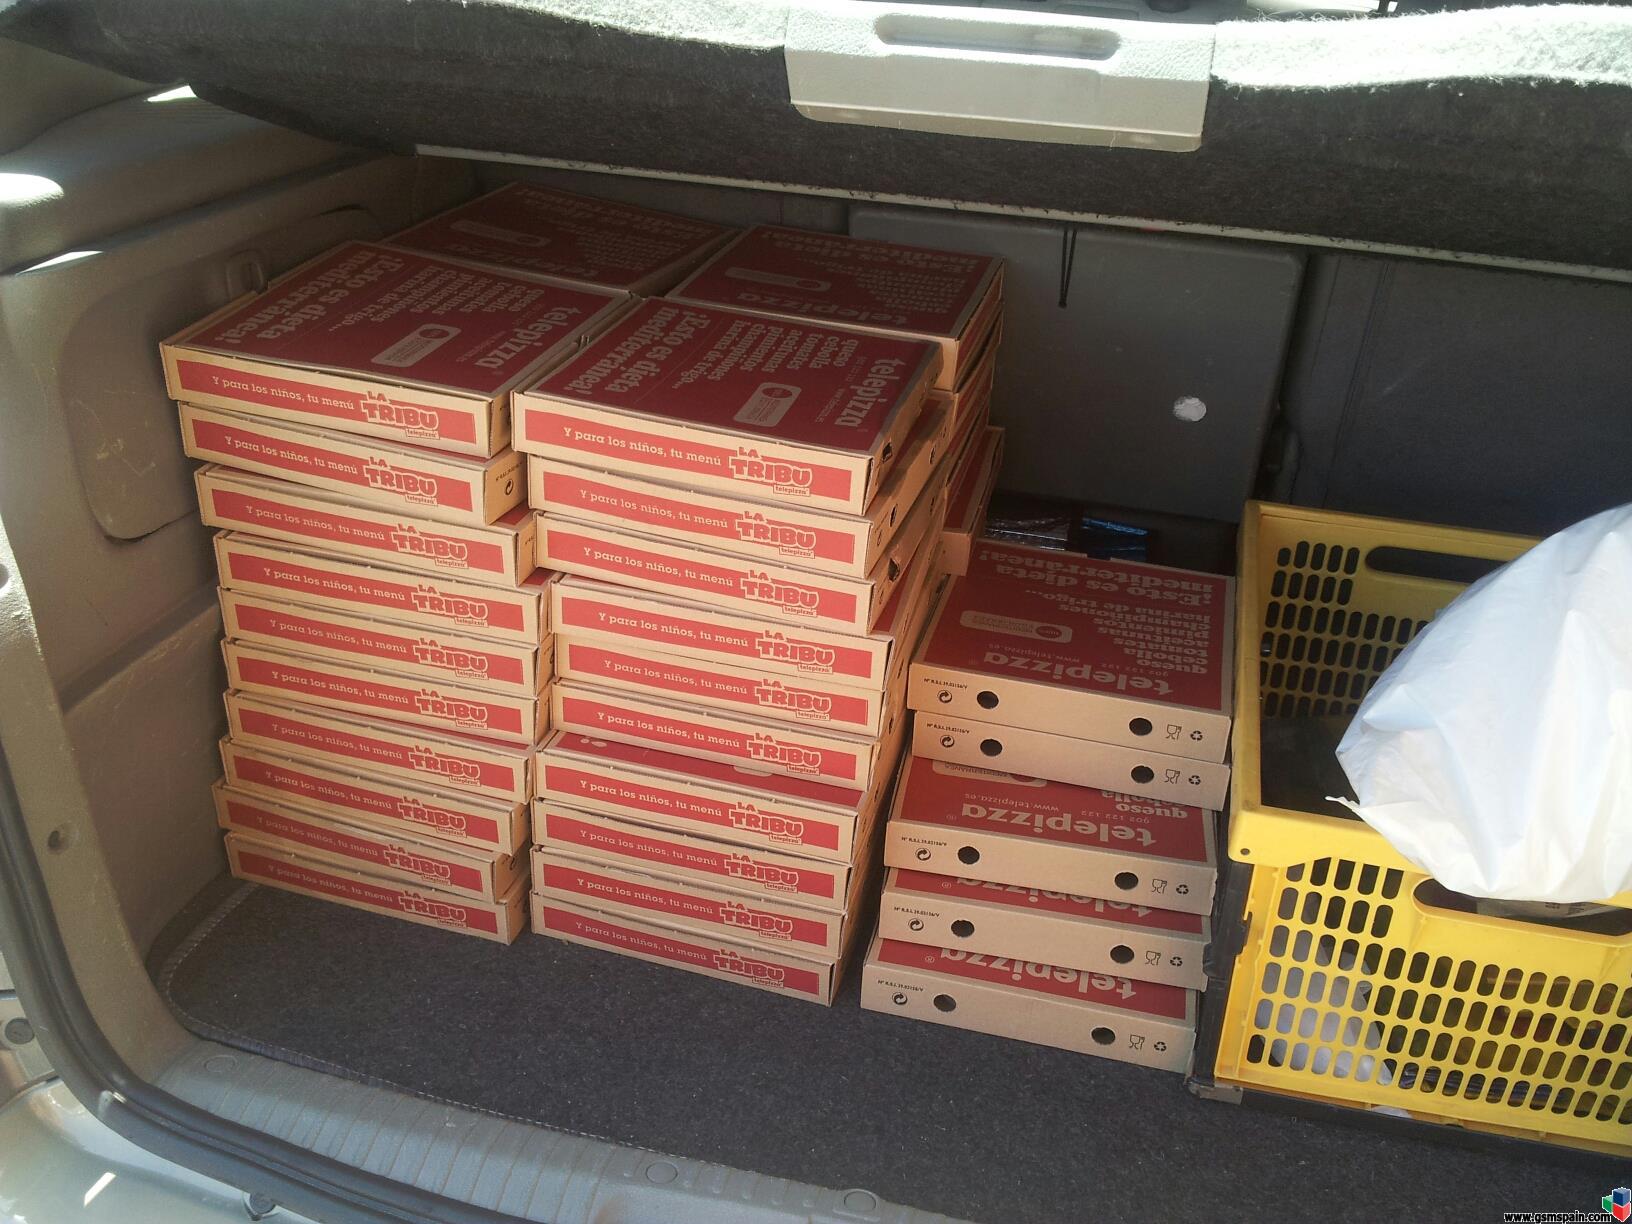 [CHOLLO] Pizzas en Telepizza a 1 euro. Yo he pedido 45